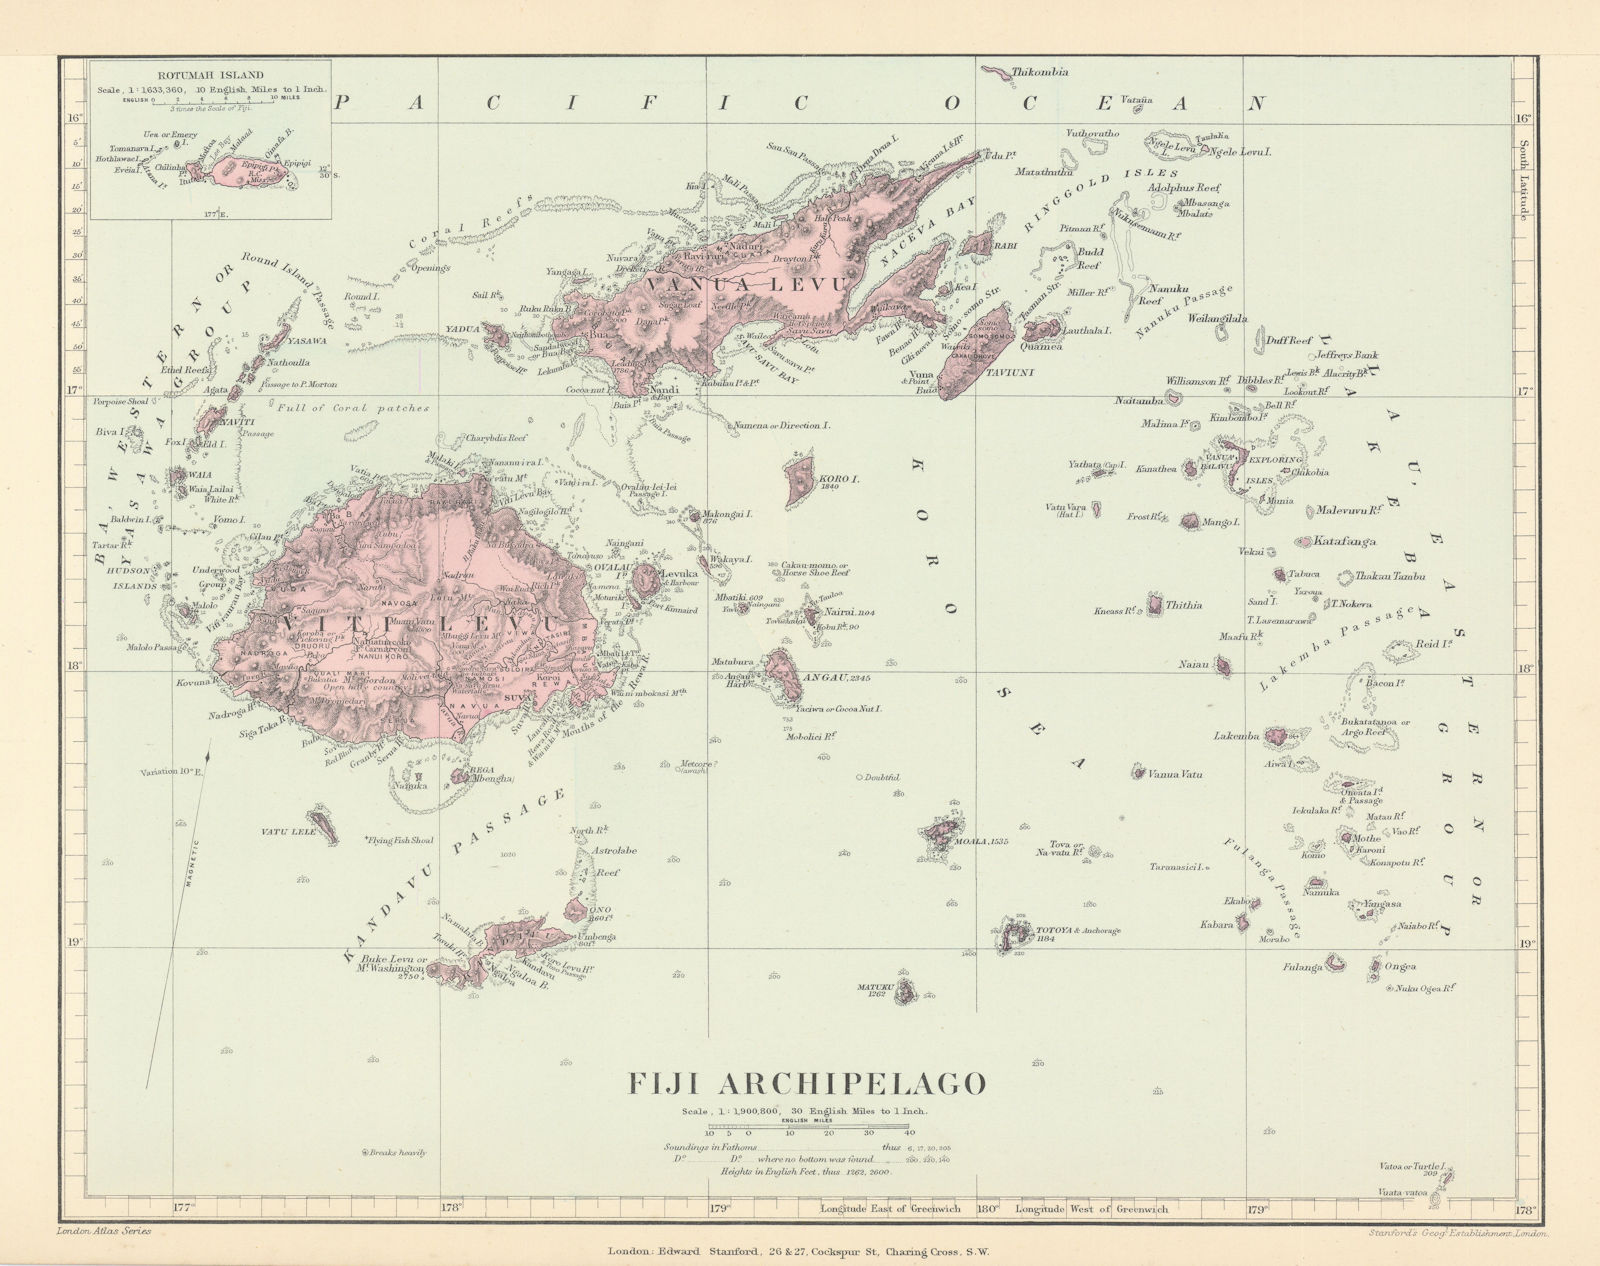 Fiji Archipelago. Vanua Levu. Viti Levu. Rotumah. STANFORD 1896 old map